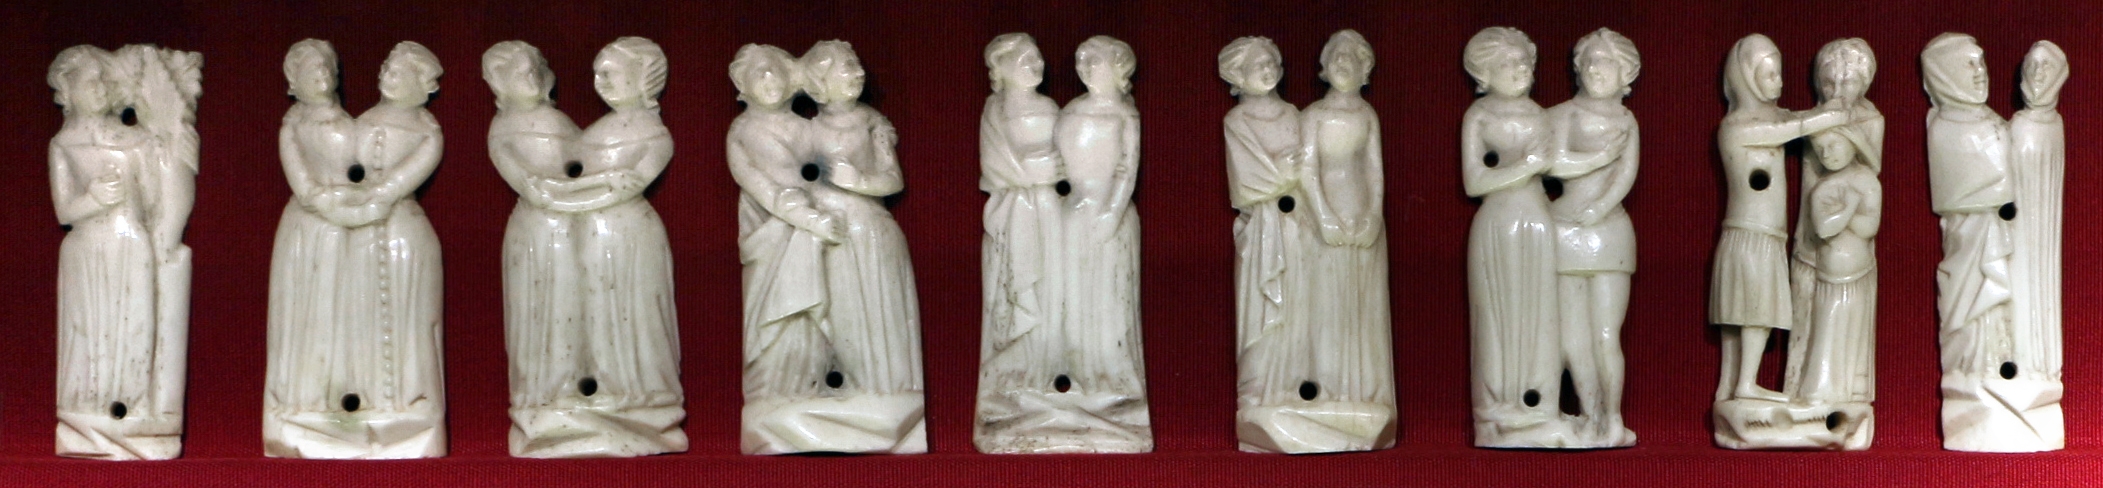 Bottega delle figure inchiodate, nove placchette da un cofanetto, italia centrale, osso, 1350-75 ca - Sailko